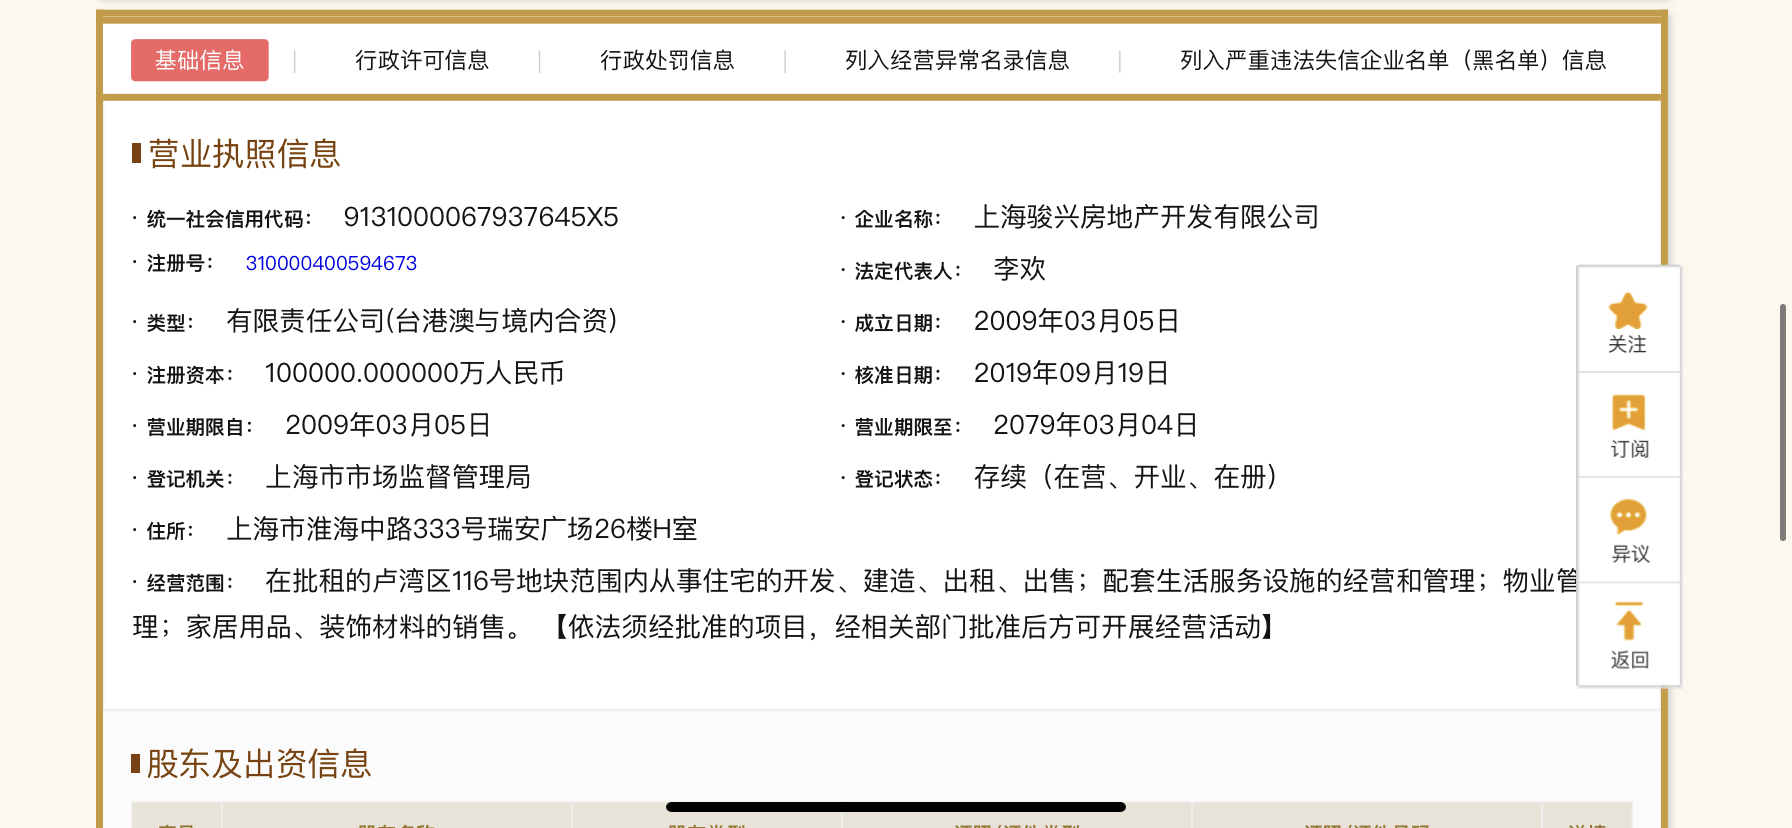 【上海市翠湖天地五期楼盘】房价,户型,开盘时间详情 开发商营业执照